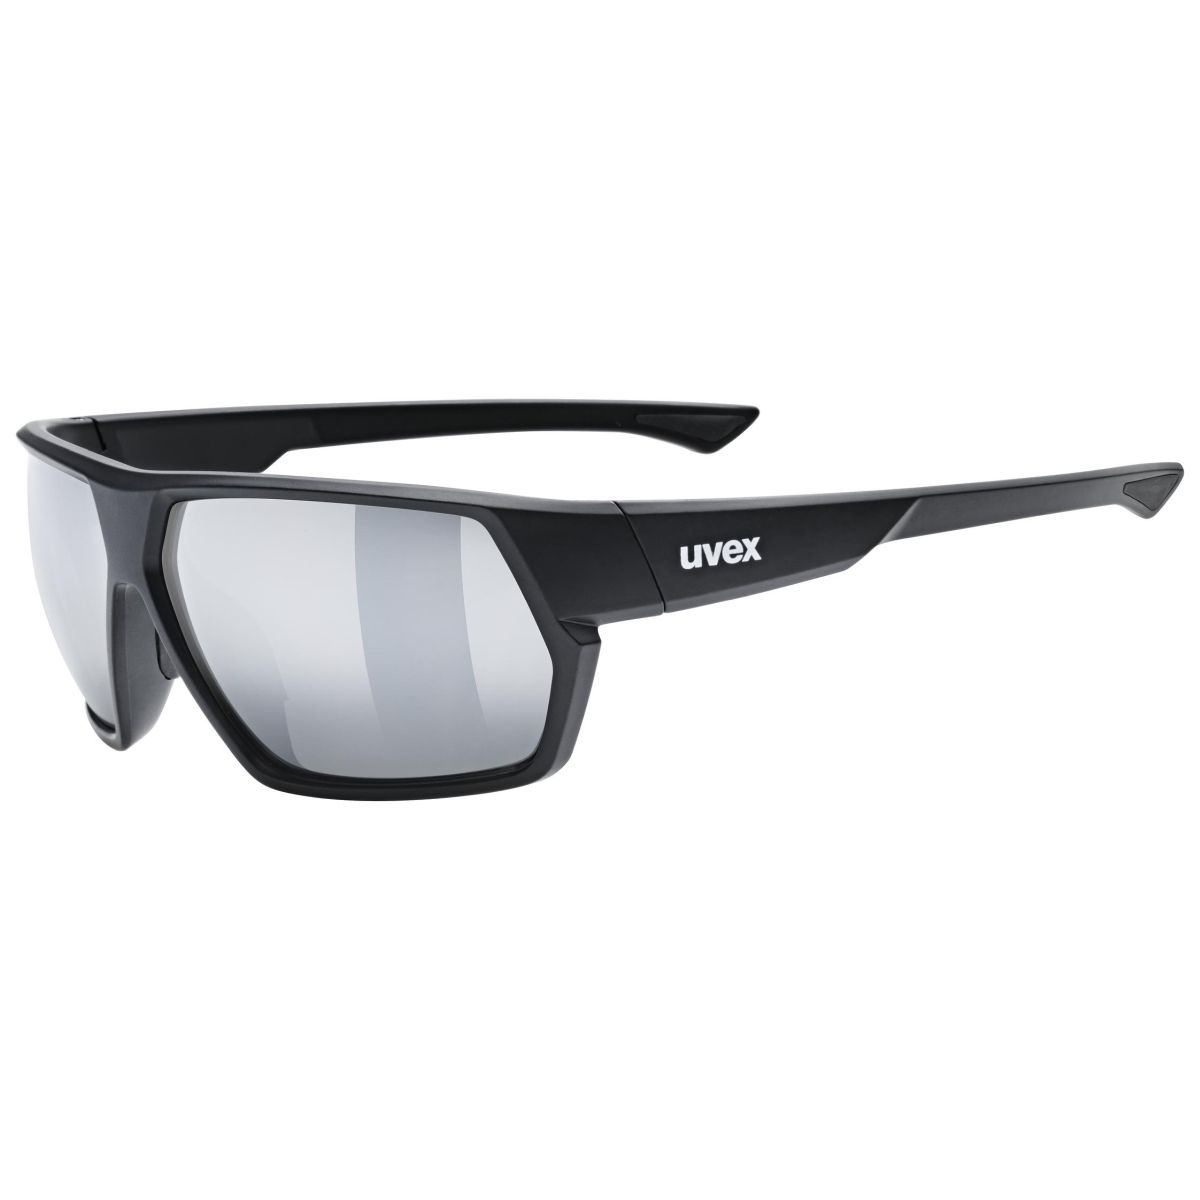 Bild von Uvex sportstyle 238 Brille - black matt/mirror silver